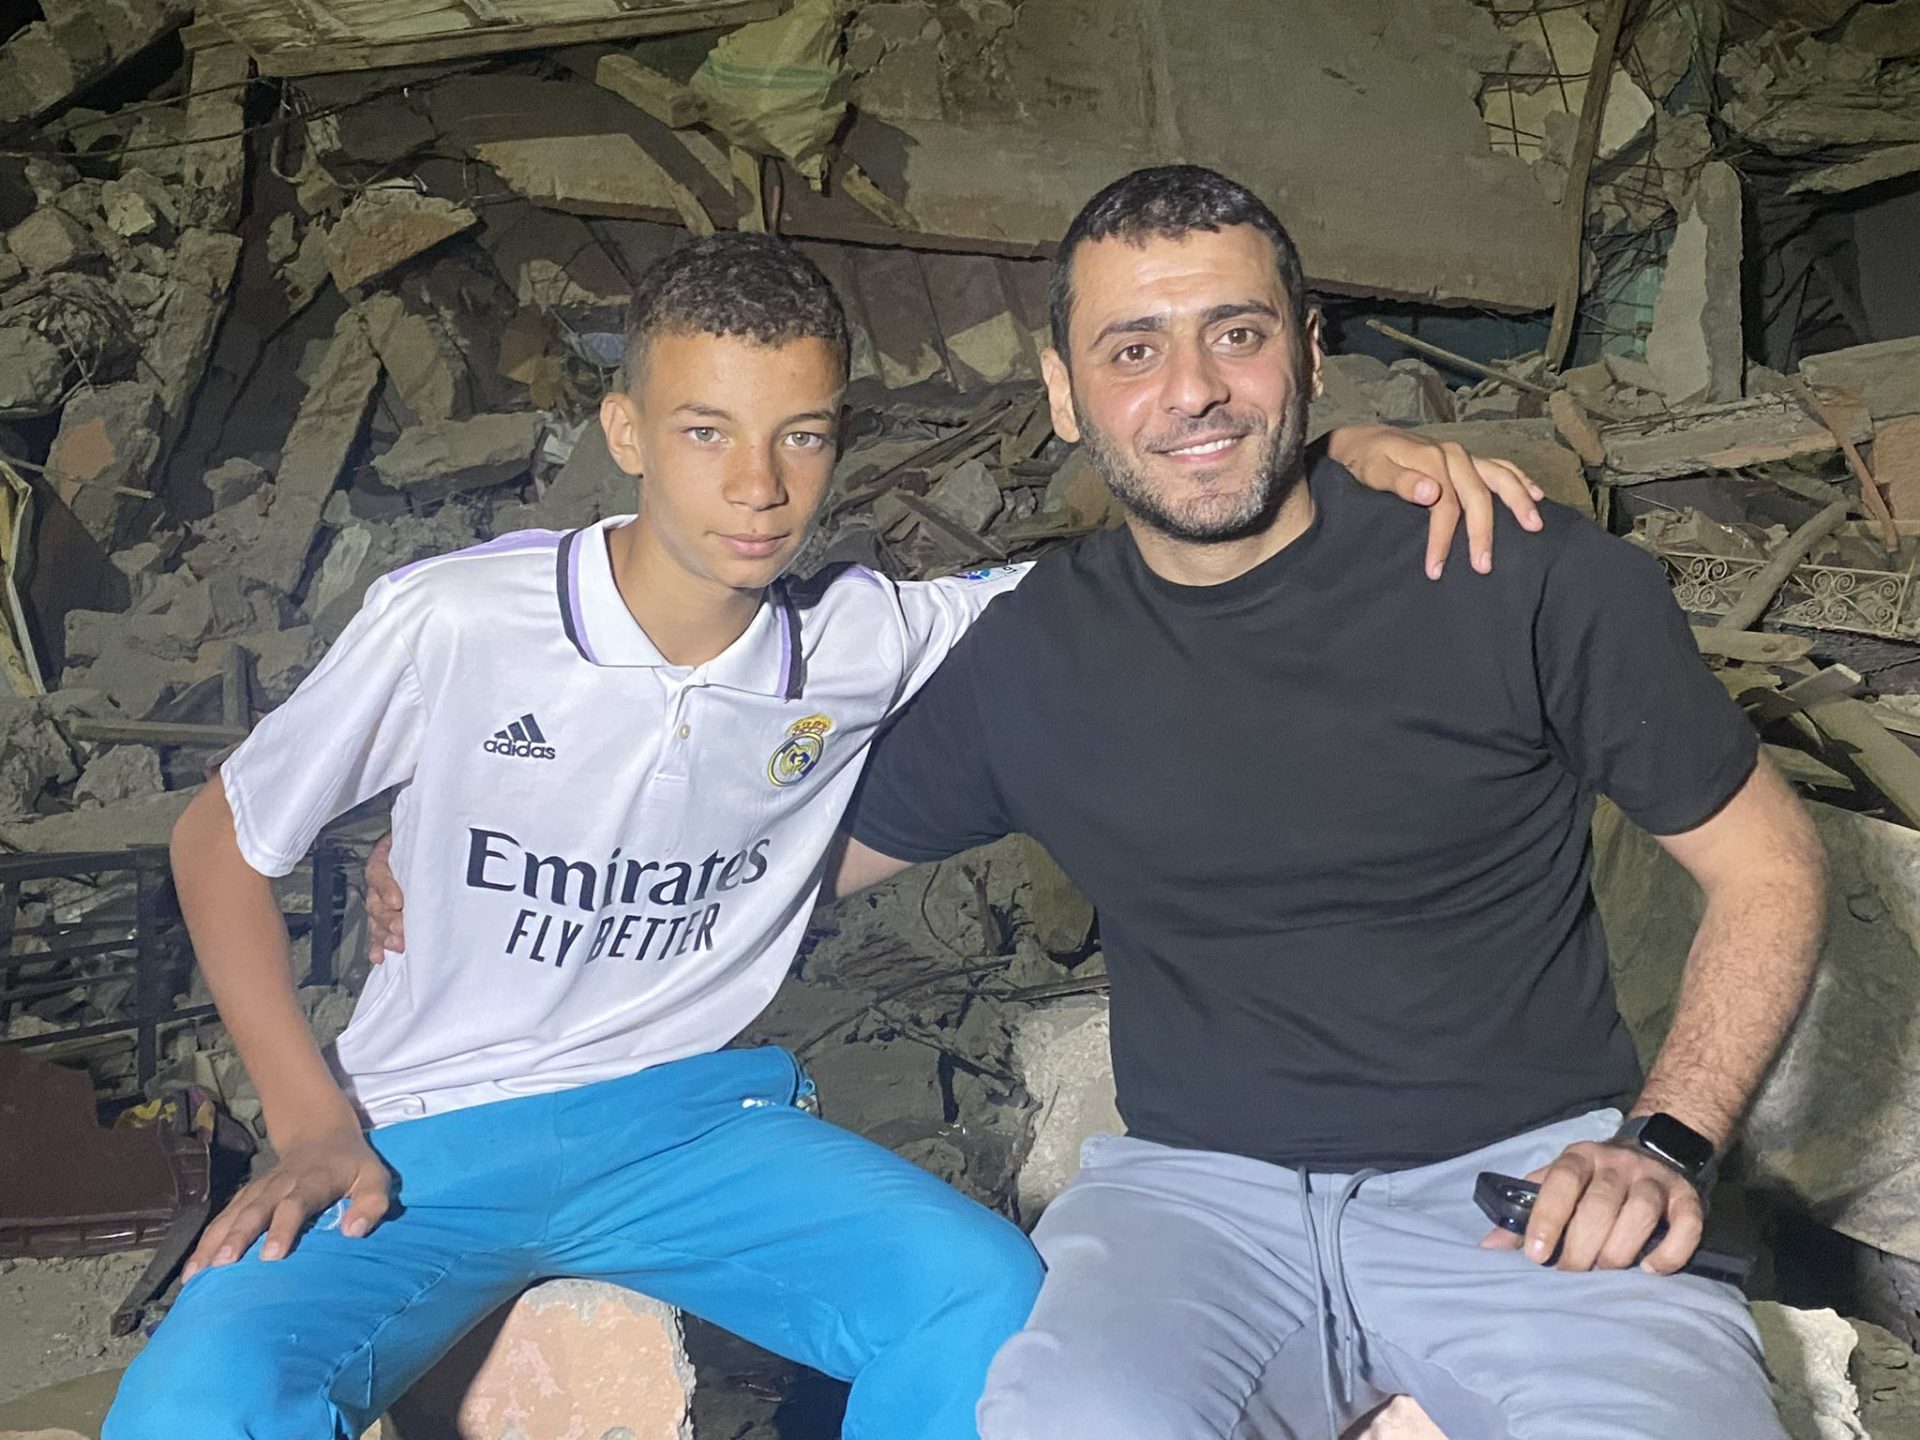 ريال مدريد يبحث عن طفل مغربي من ضحايا الزلزال ظهر مرتديا قميص النادي